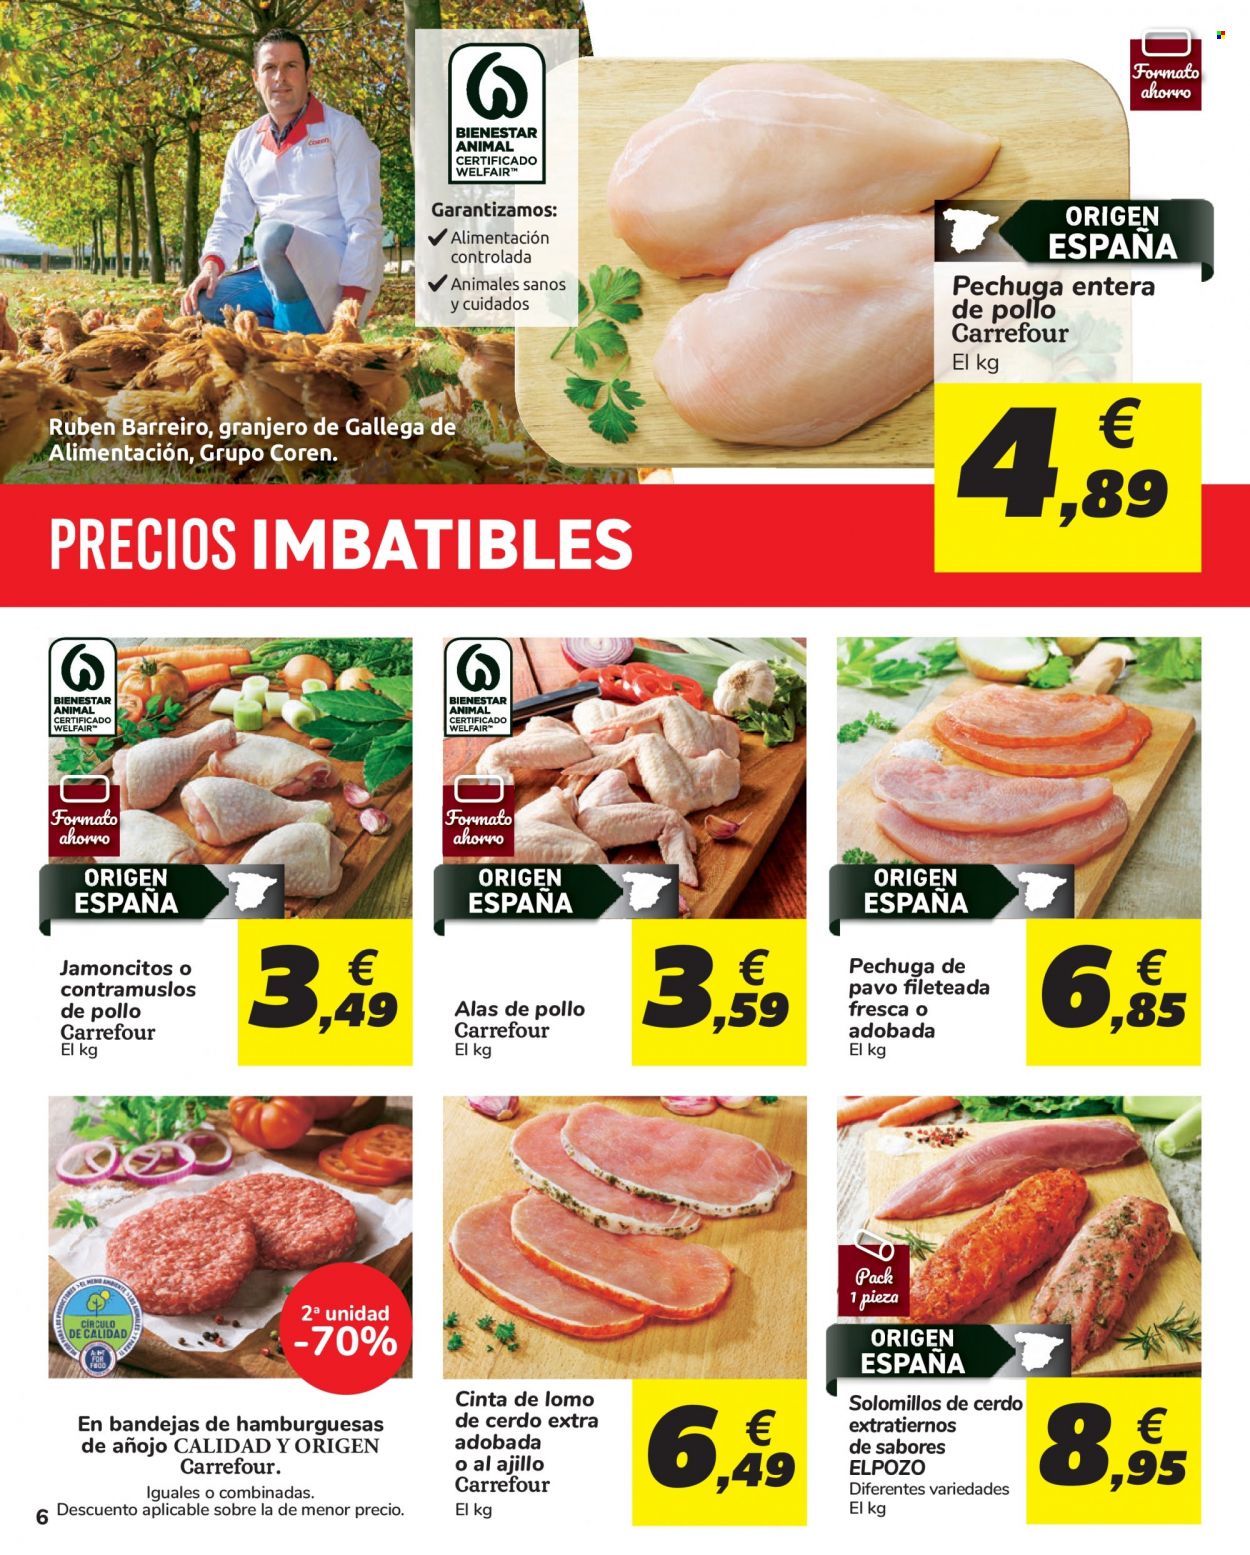 thumbnail - Folleto actual Carrefour - 03/12/21 - 14/12/21 - Ventas - lomo de cerdo, cinta de lomo, contramuslo, pavo, pechuga de pavo, alitas de pollo, muslo de pollo, hamburguesa. Página 6.